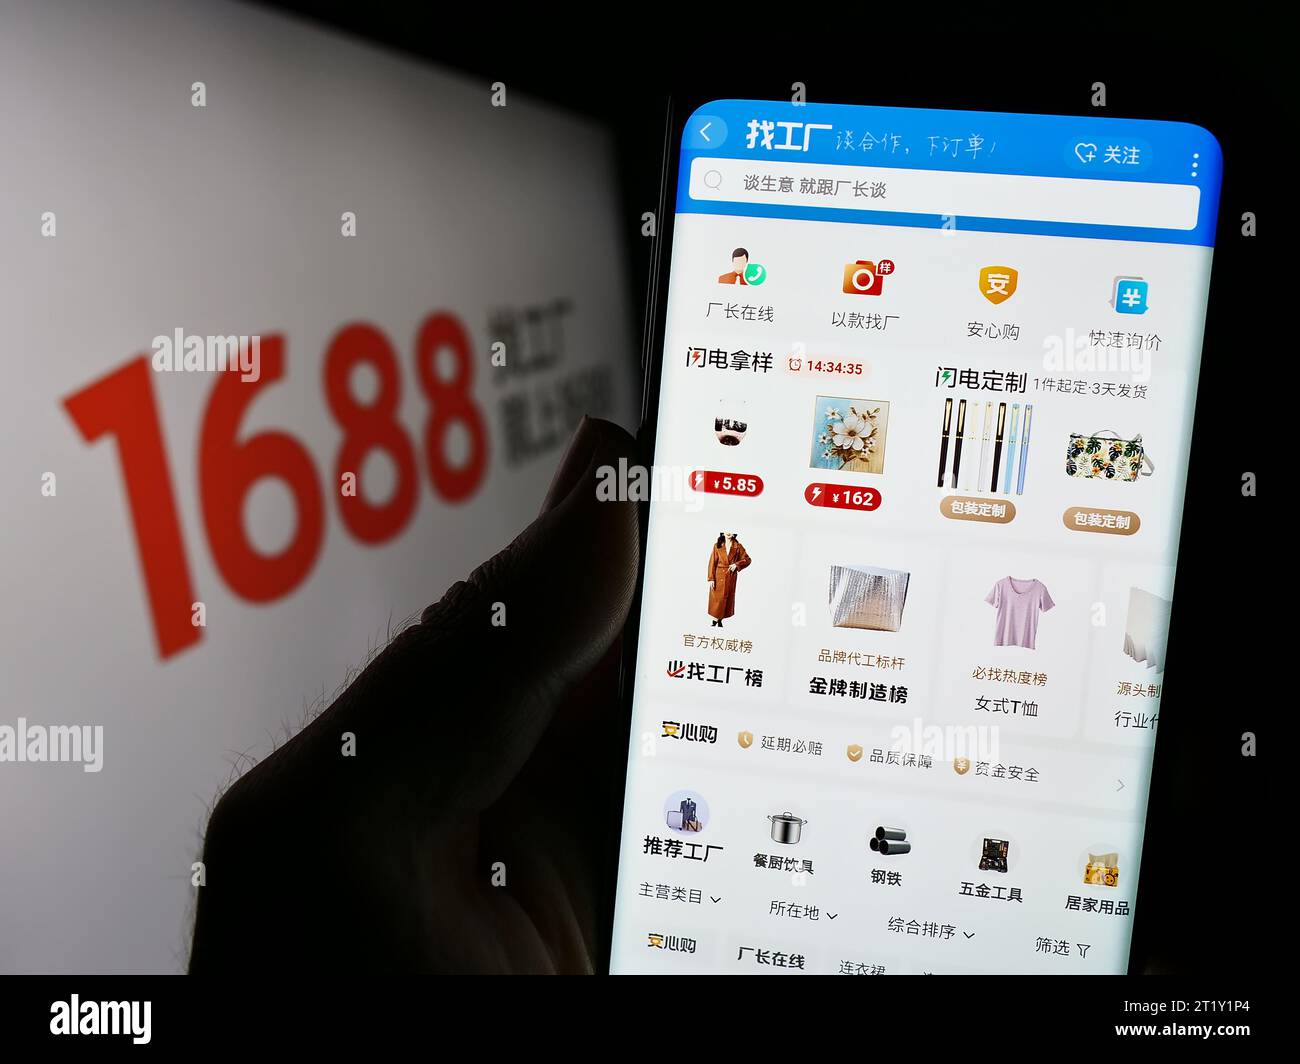 Person, die ein Mobiltelefon hält, mit der Webseite des chinesischen Online-Shops 1688.com (Alibaba) vor dem Geschäftslogo. Konzentrieren Sie sich auf die Mitte des Telefondisplays. Stockfoto